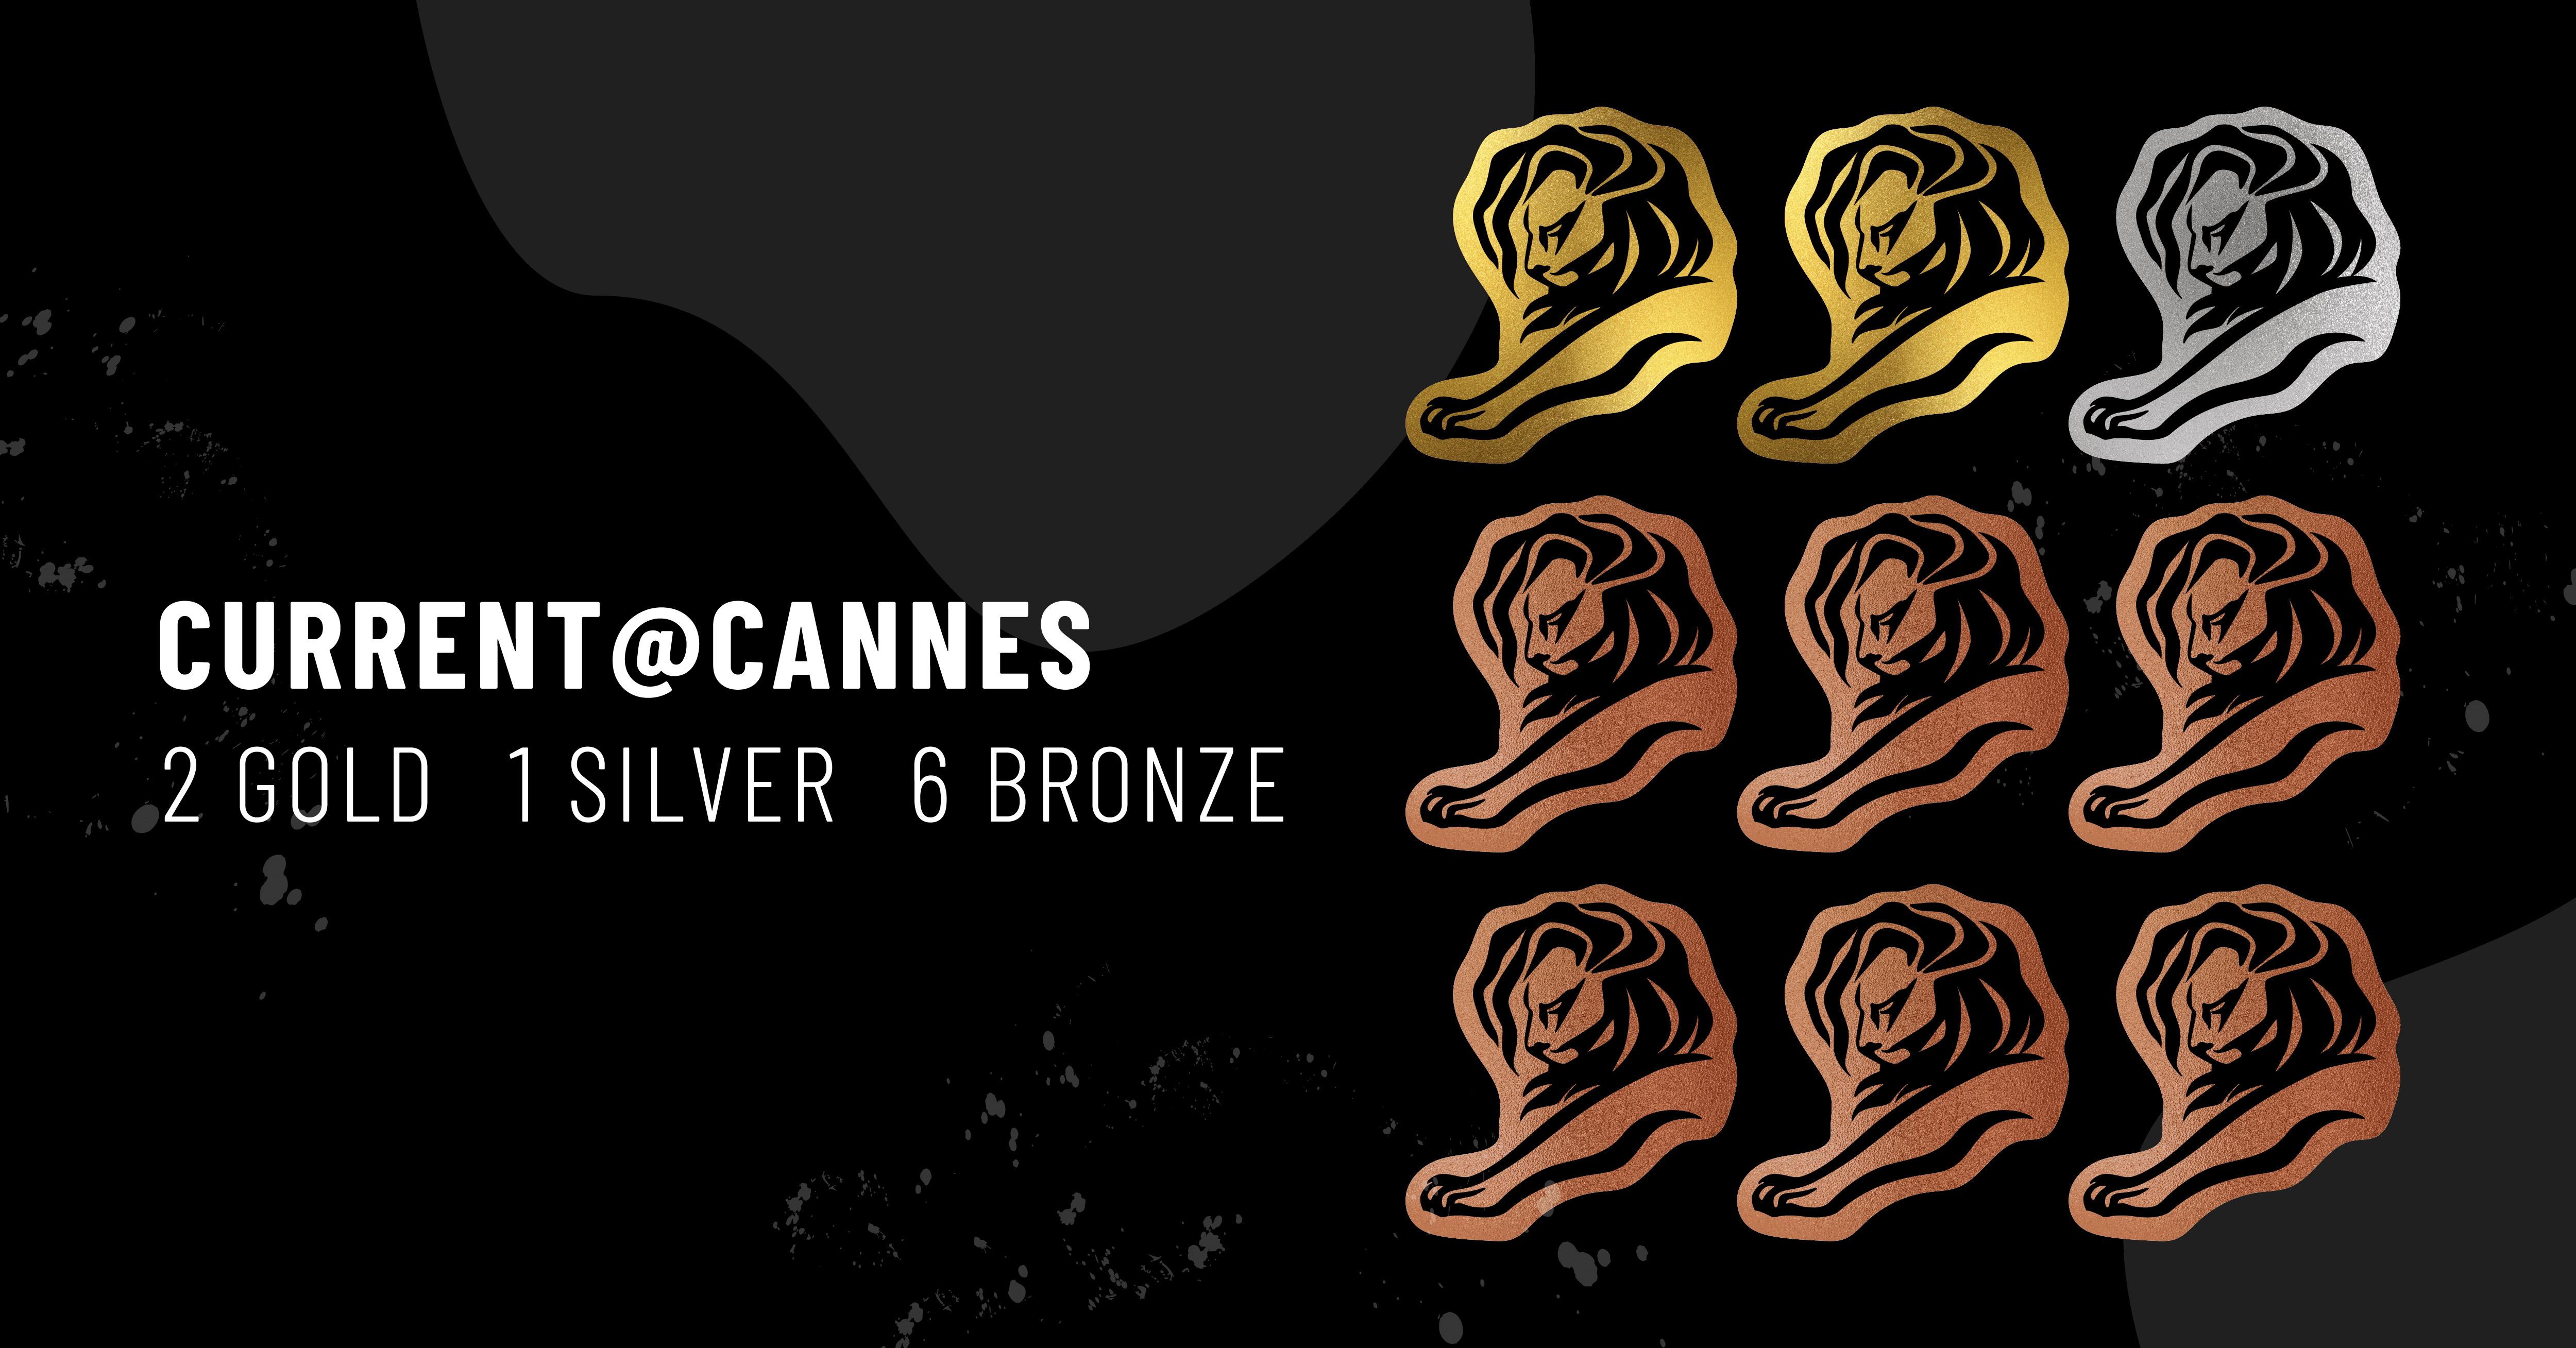 图片展示了 9 个戛纳国际电影节图标，并配有文字说明：Current @ Cannes - 2Gold, 1Silver, 6Bronze 。